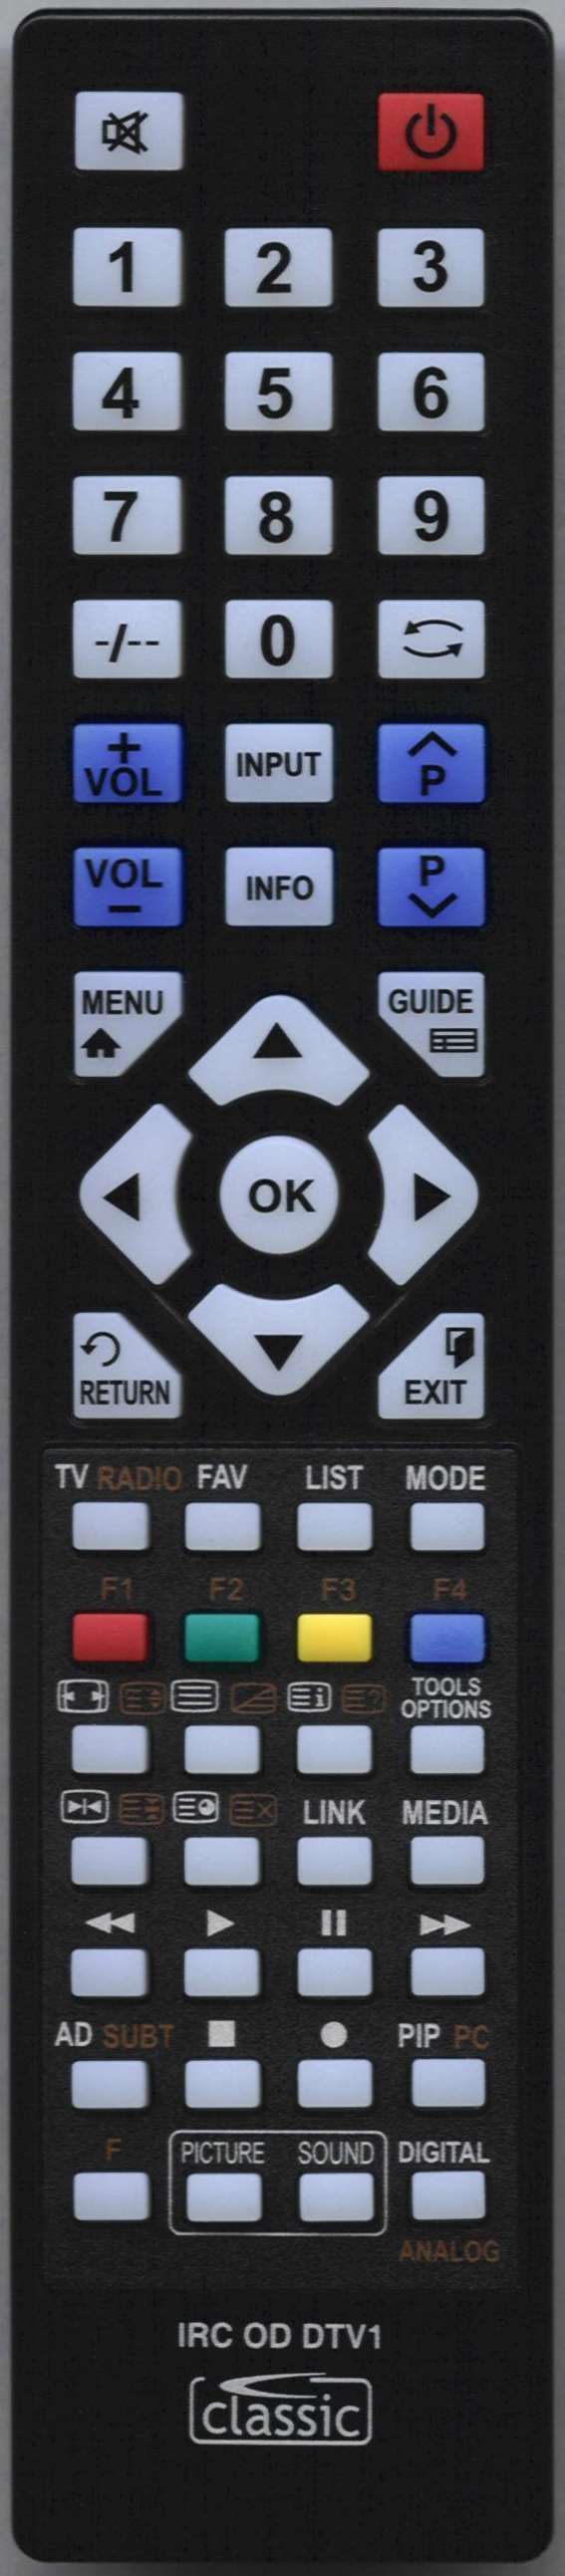 UMC L15F08N01G Remote Control